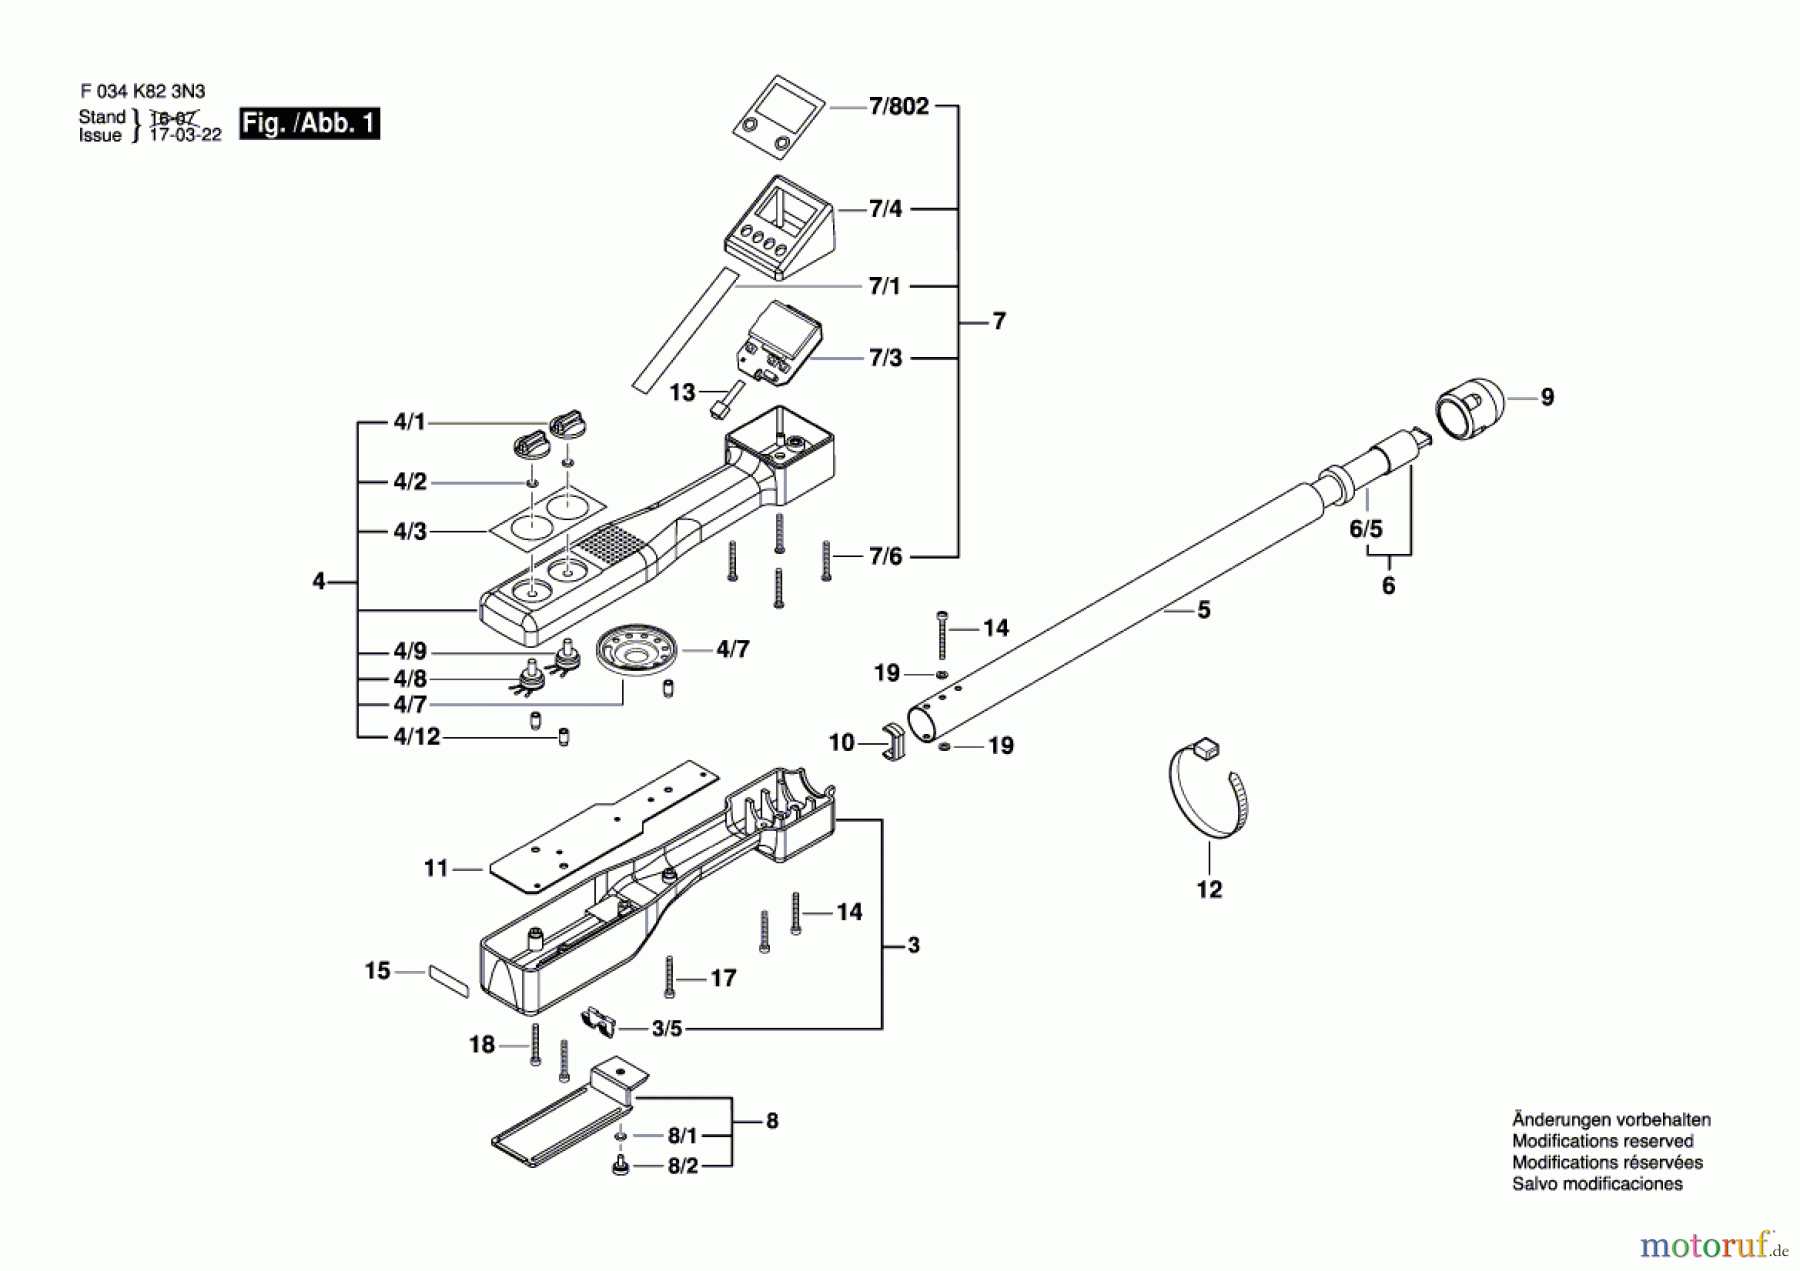  Bosch Werkzeug Metallortungsgerät 1-102 Seite 1